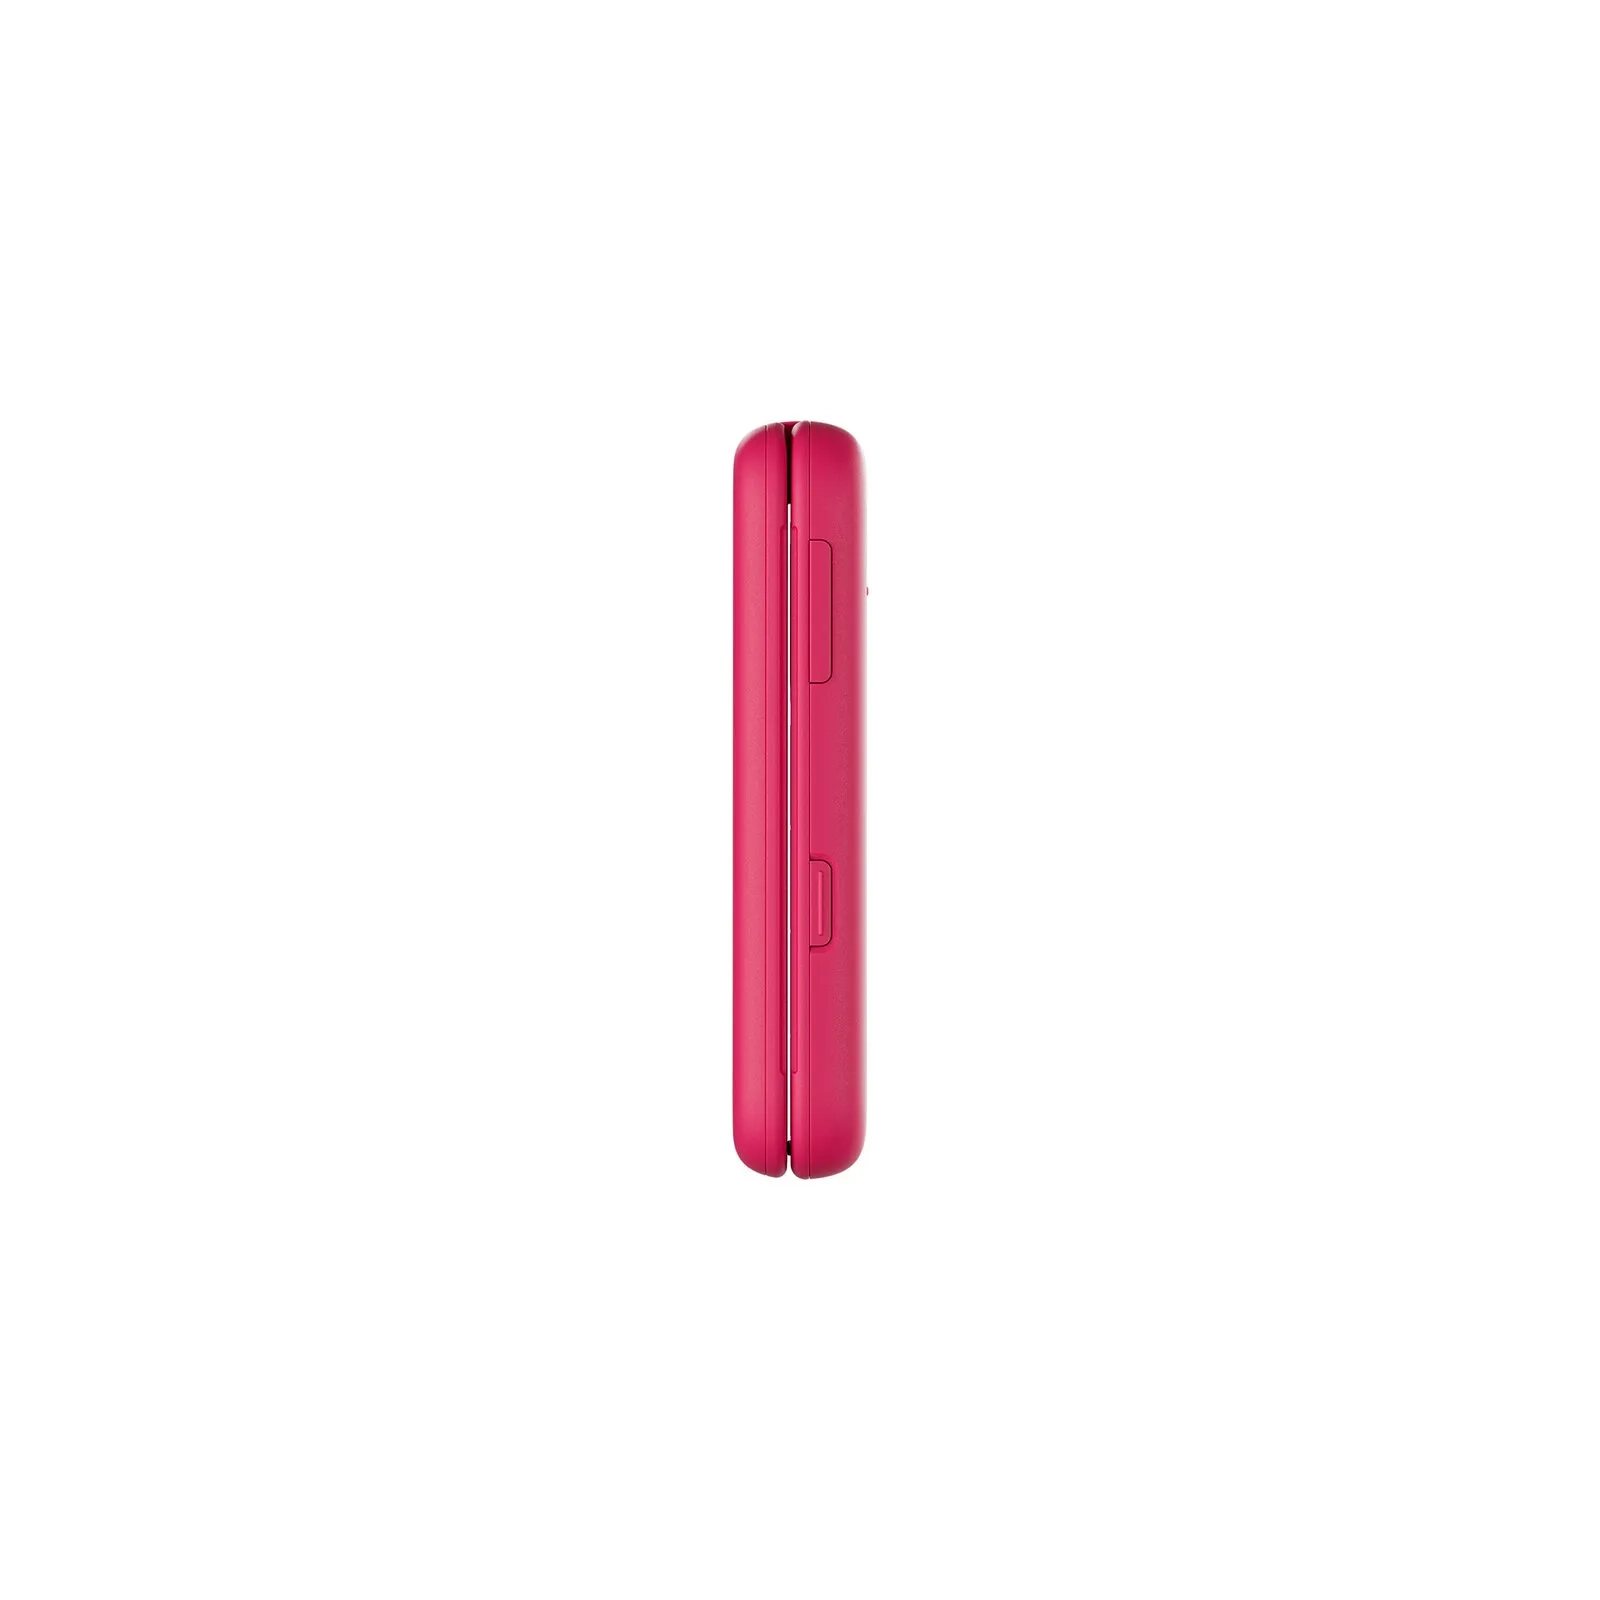 Мобильный телефон Nokia 2660 Flip Pink изображение 5